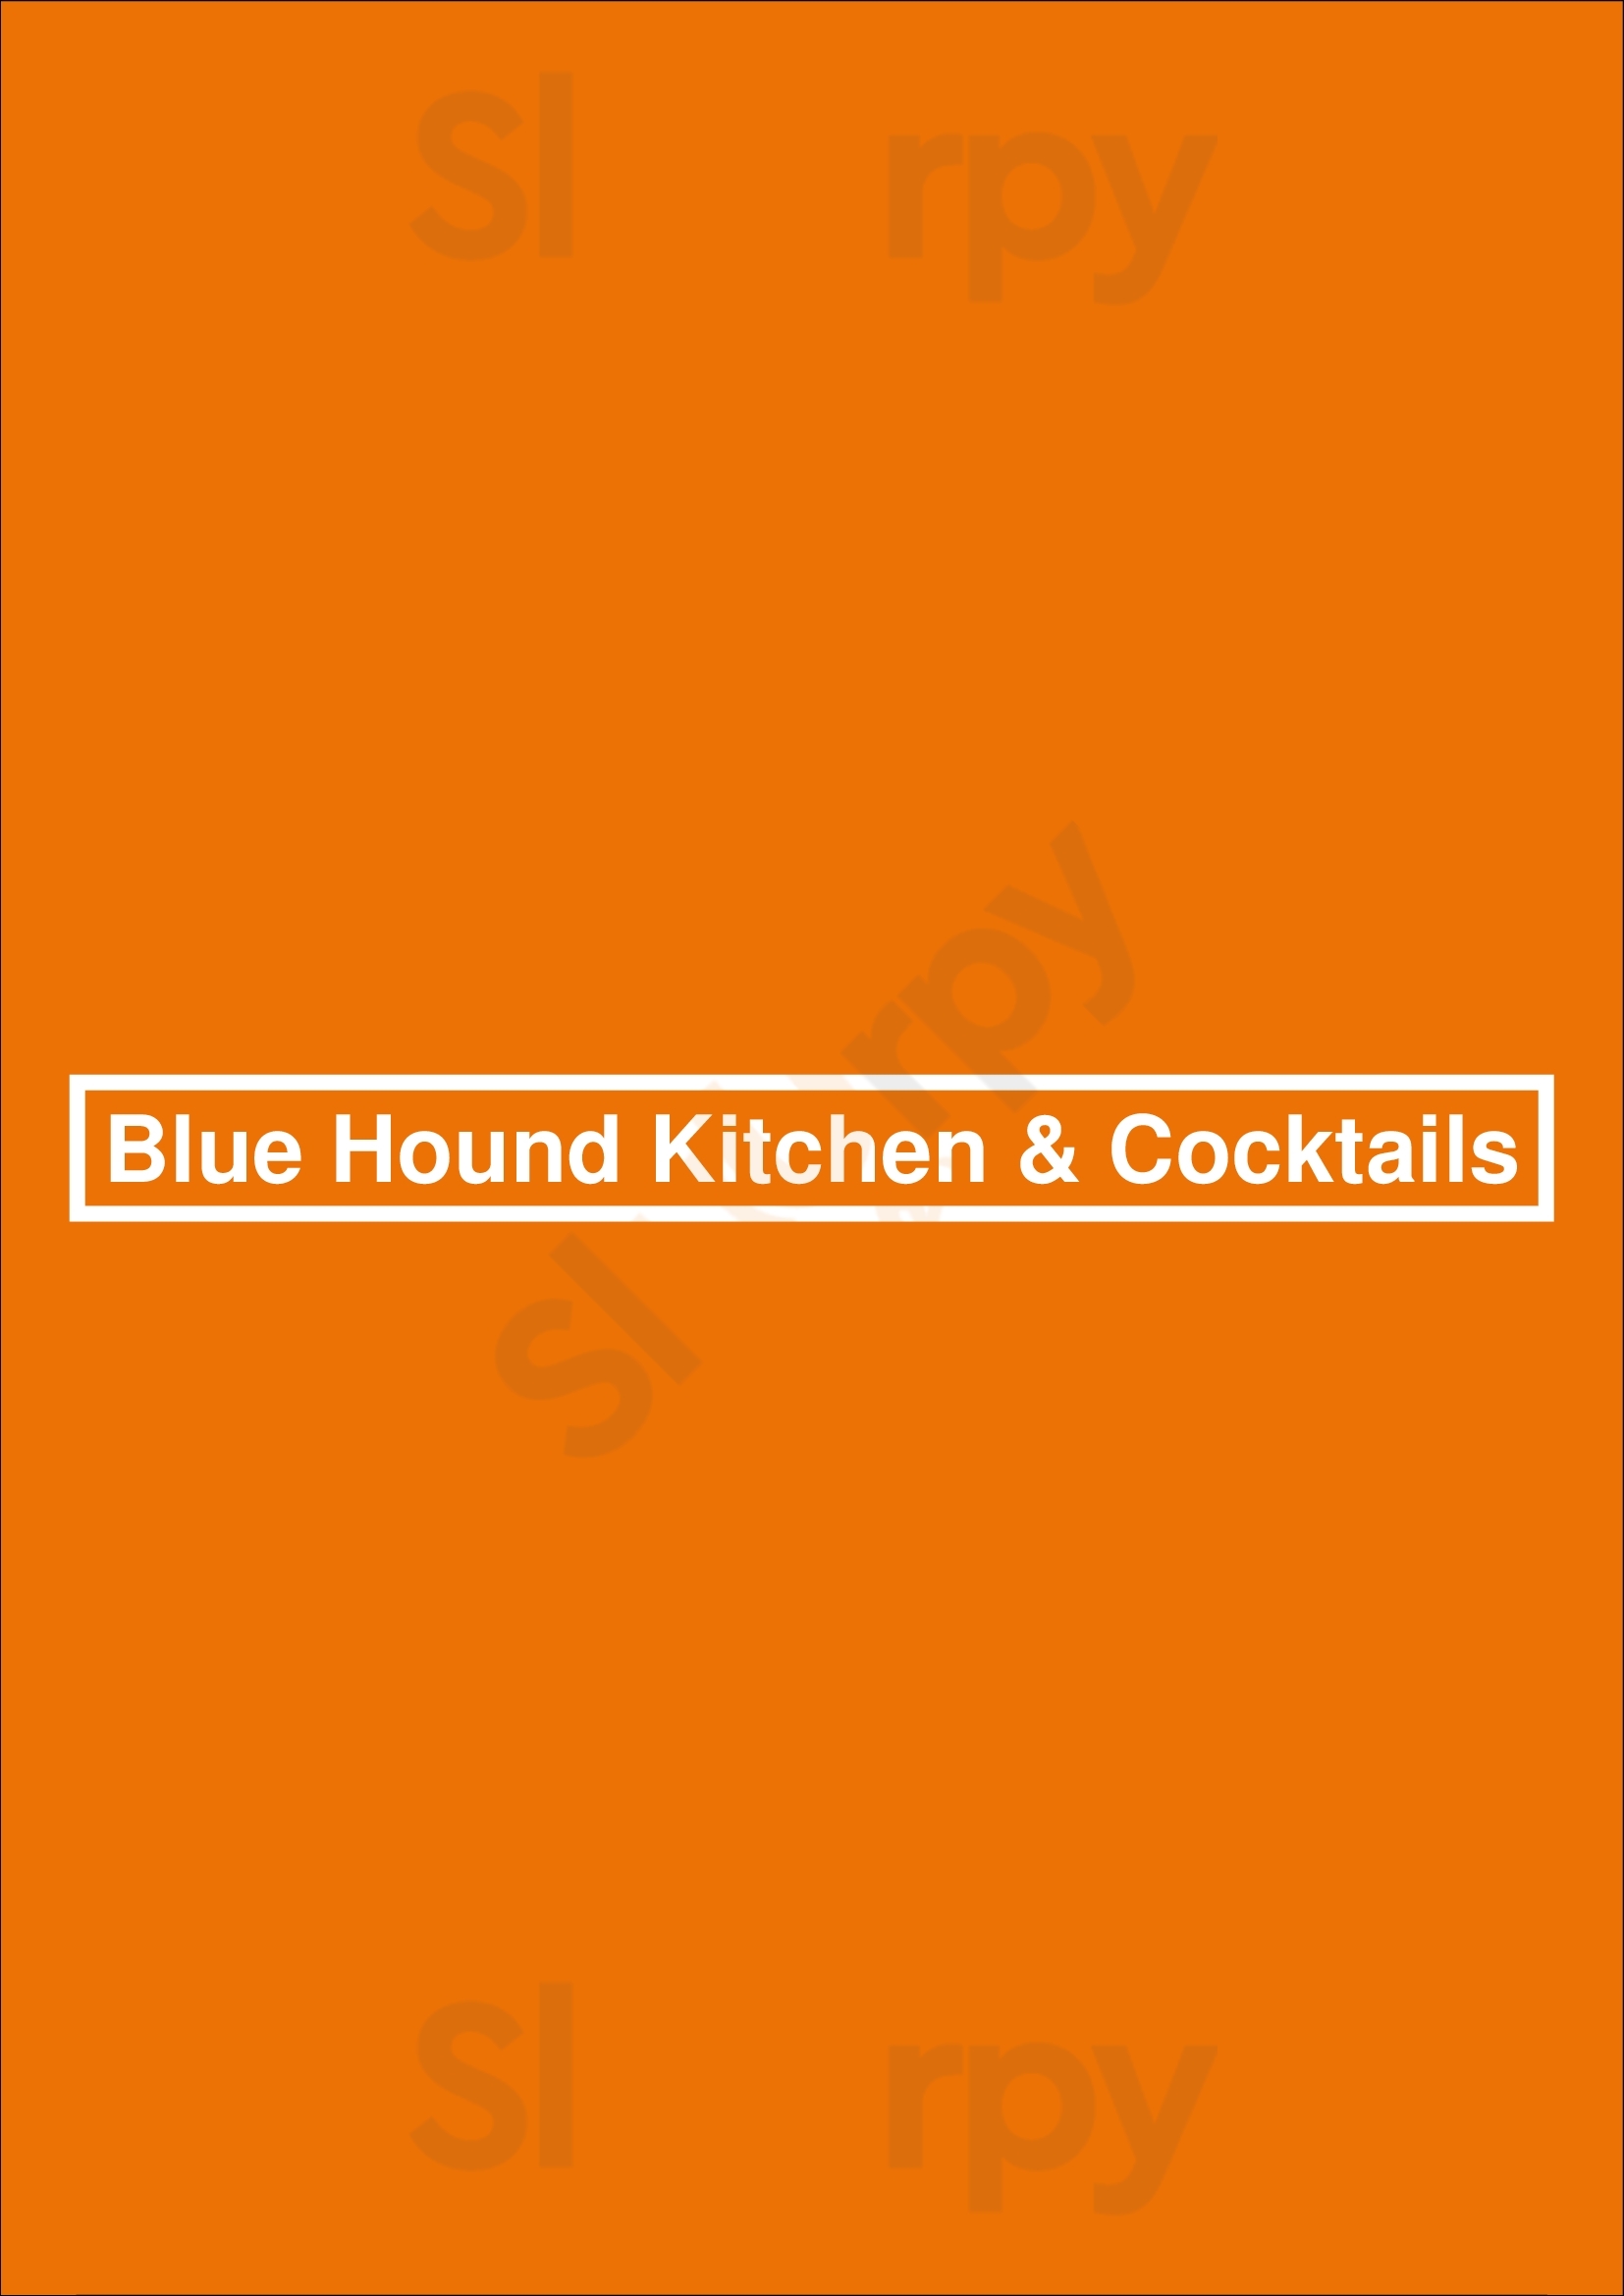 Blue Hound Kitchen & Cocktails Phoenix Menu - 1